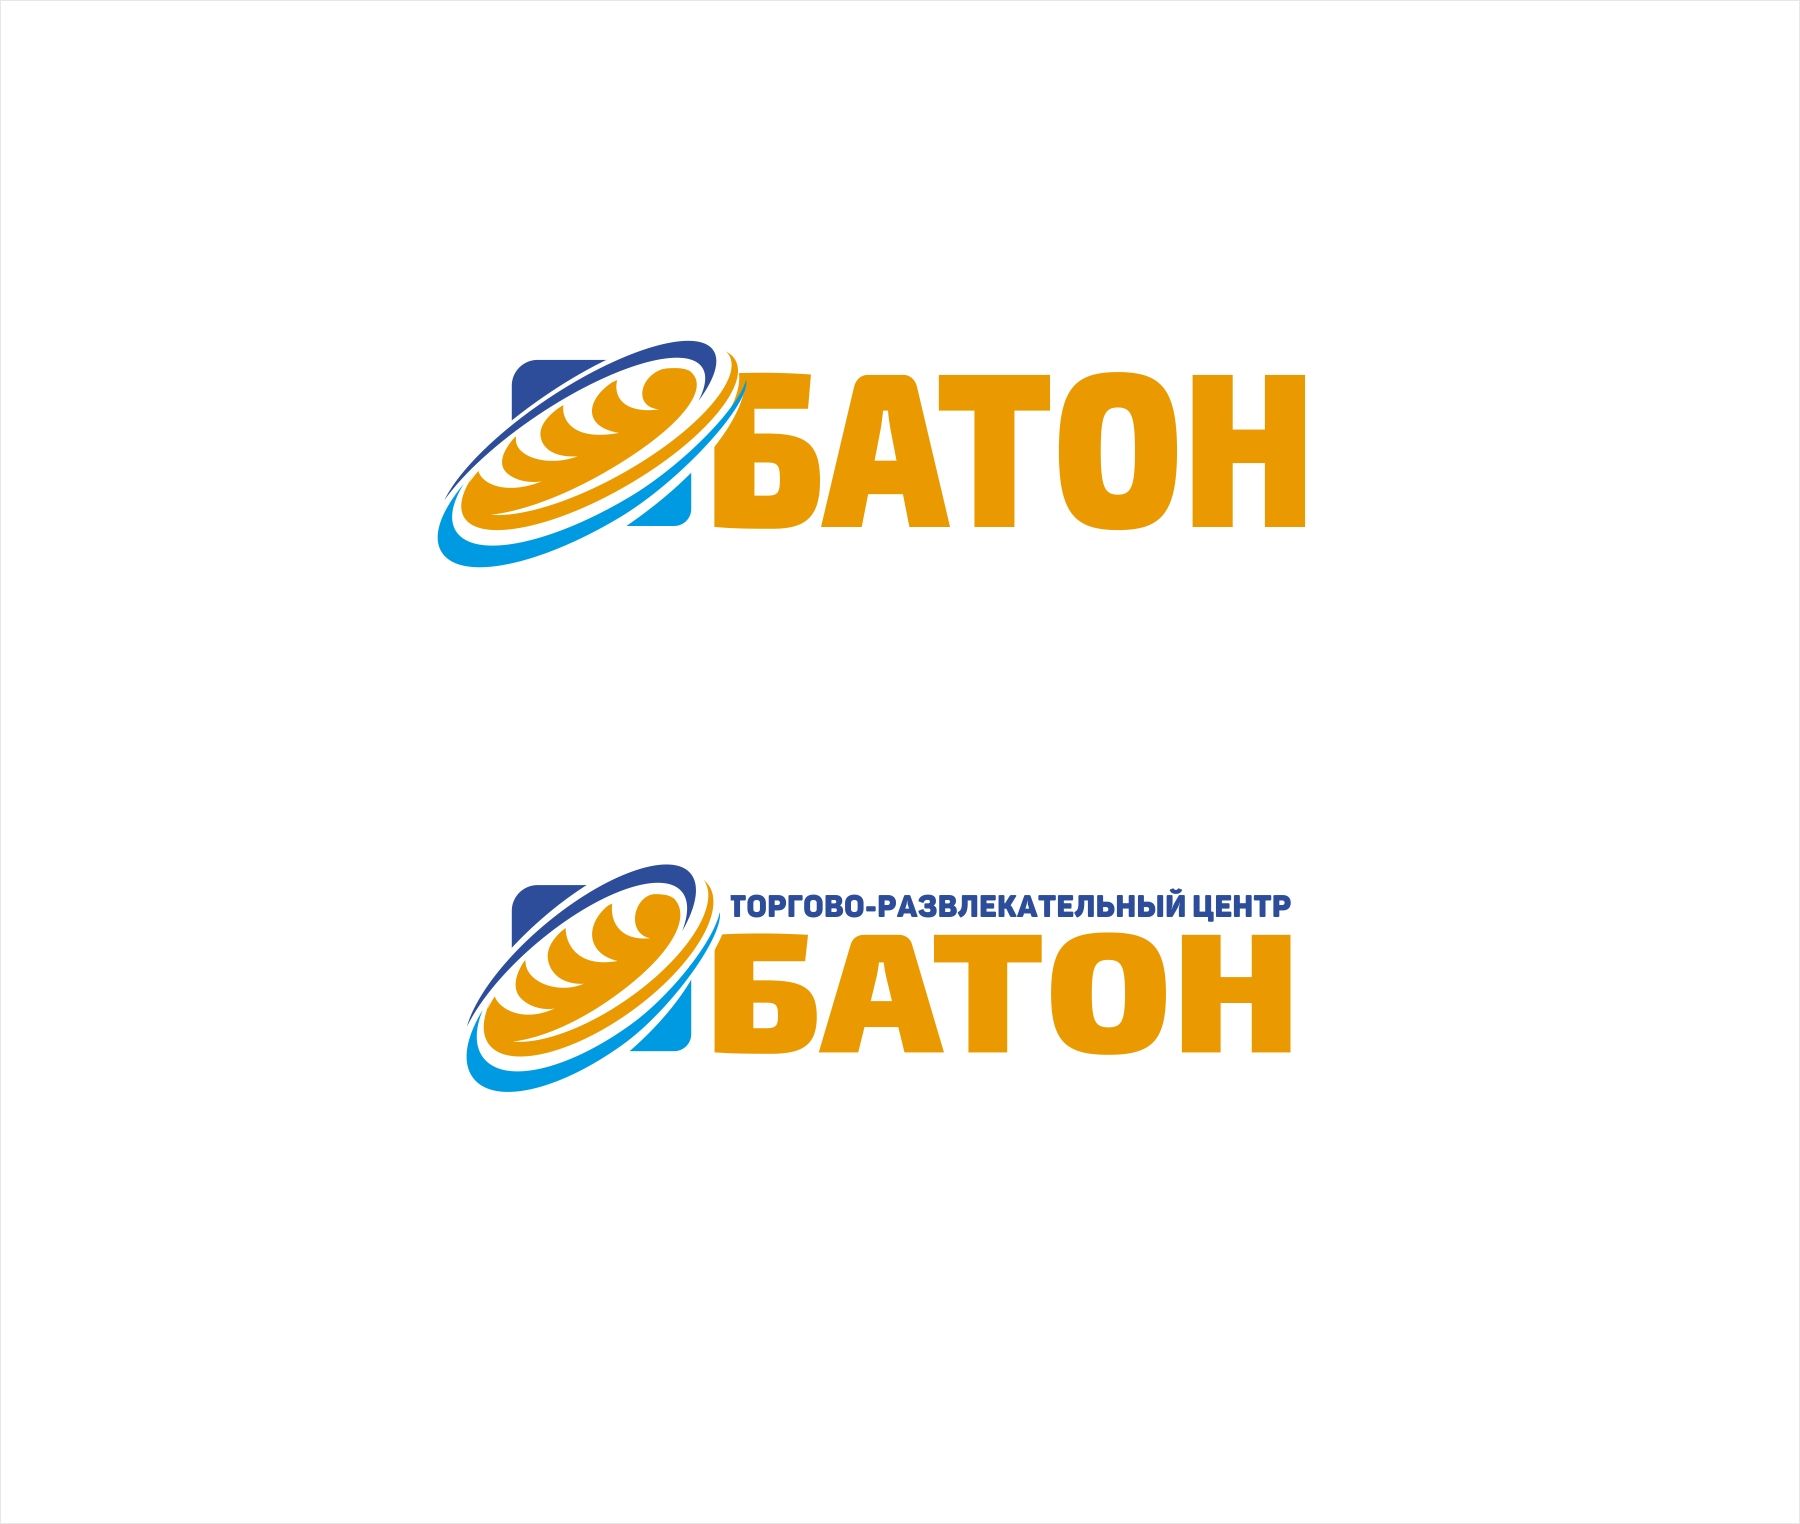 Логотип для ТРЦ (или торгово-развлекательный центр) Батон - дизайнер kras-sky